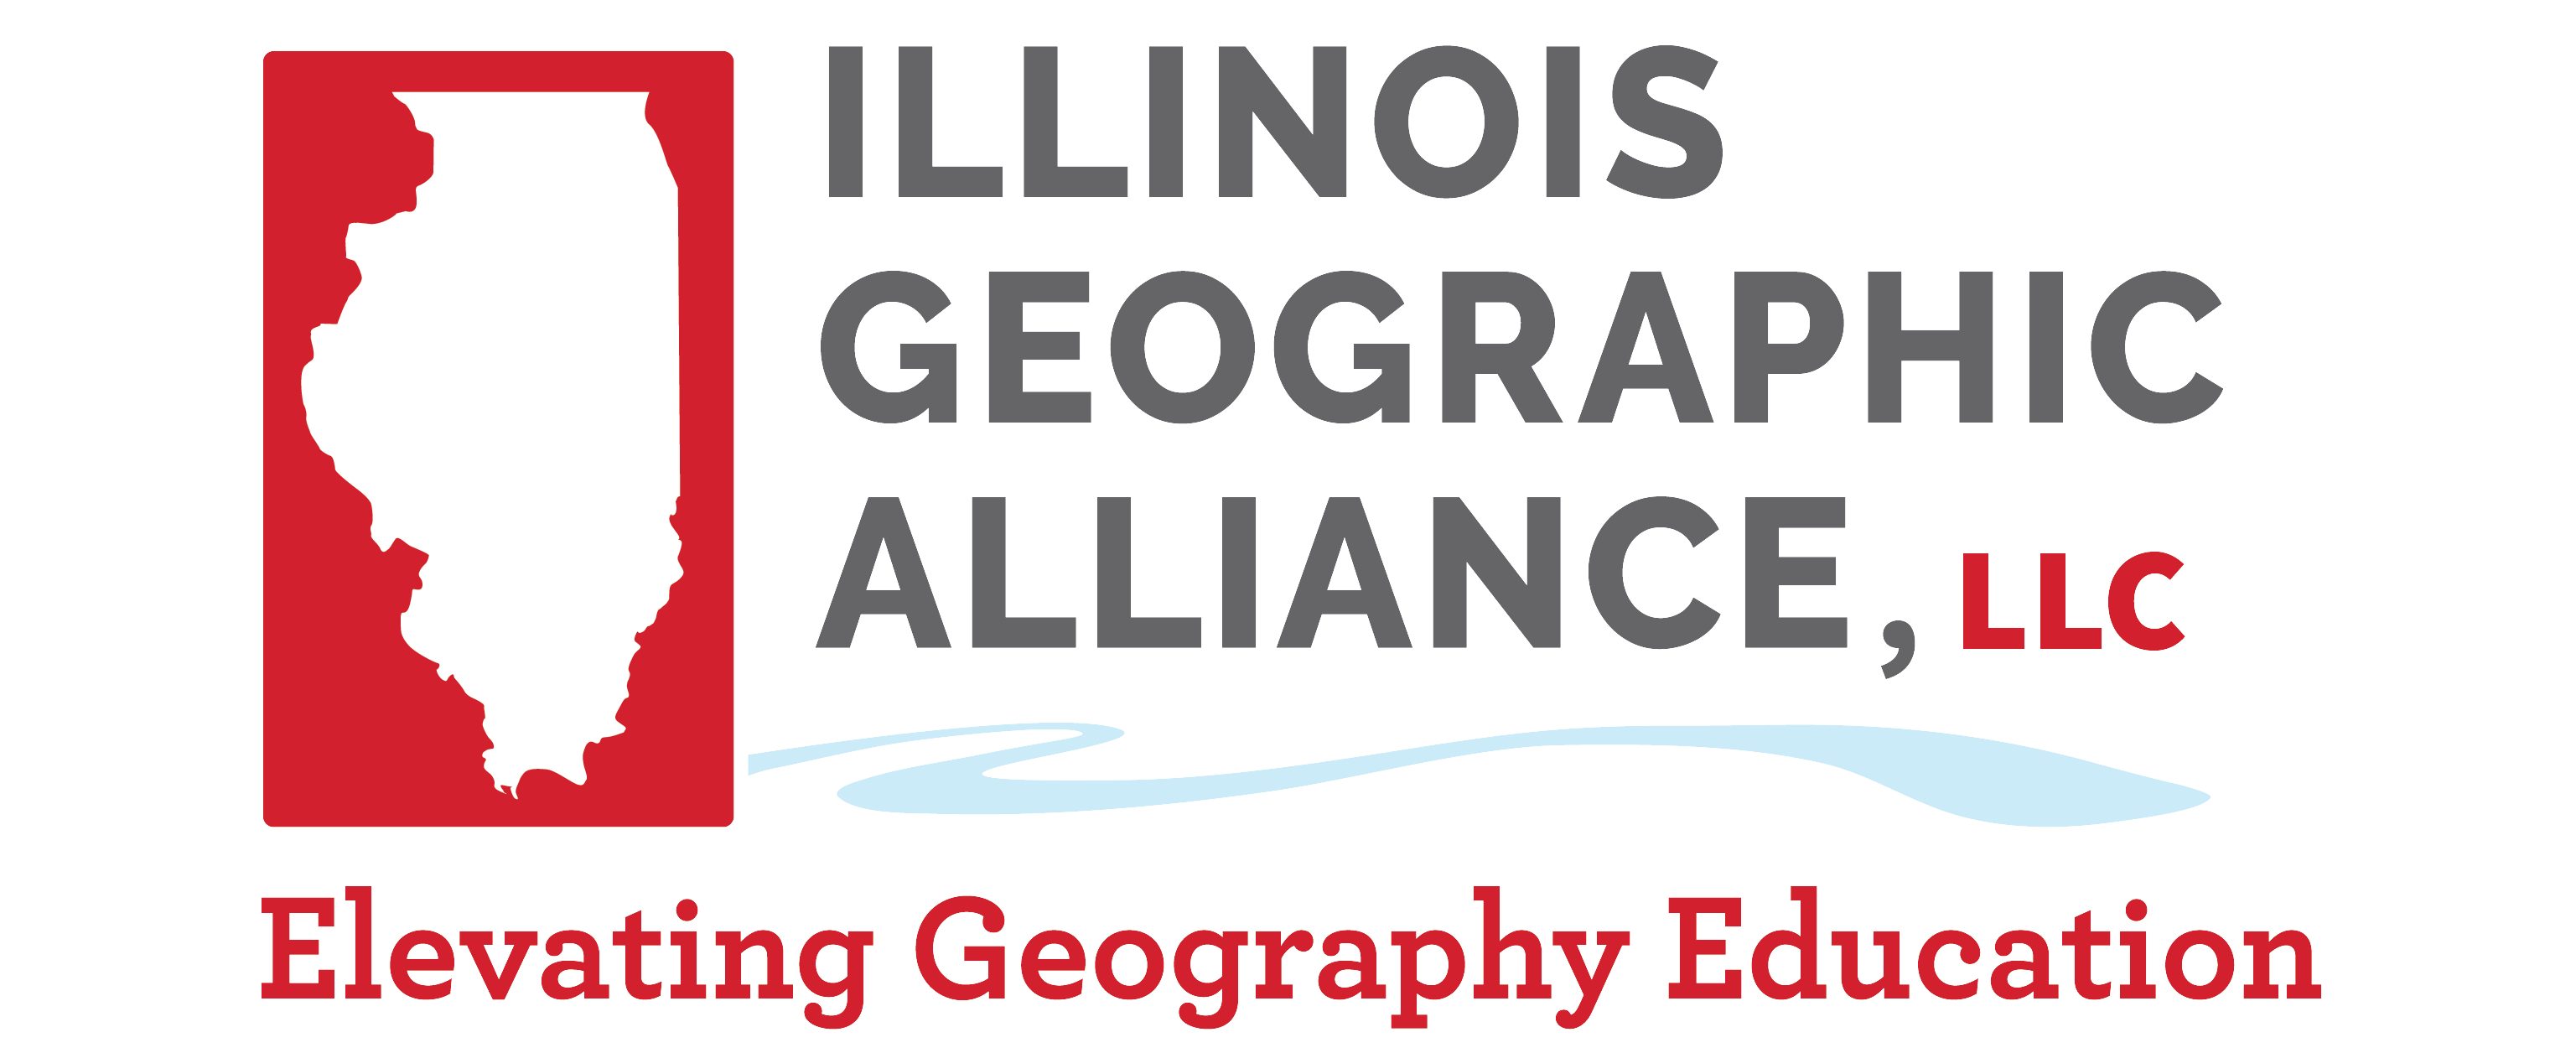 Illinois Geographic Alliance, Elevating Geography Education logo